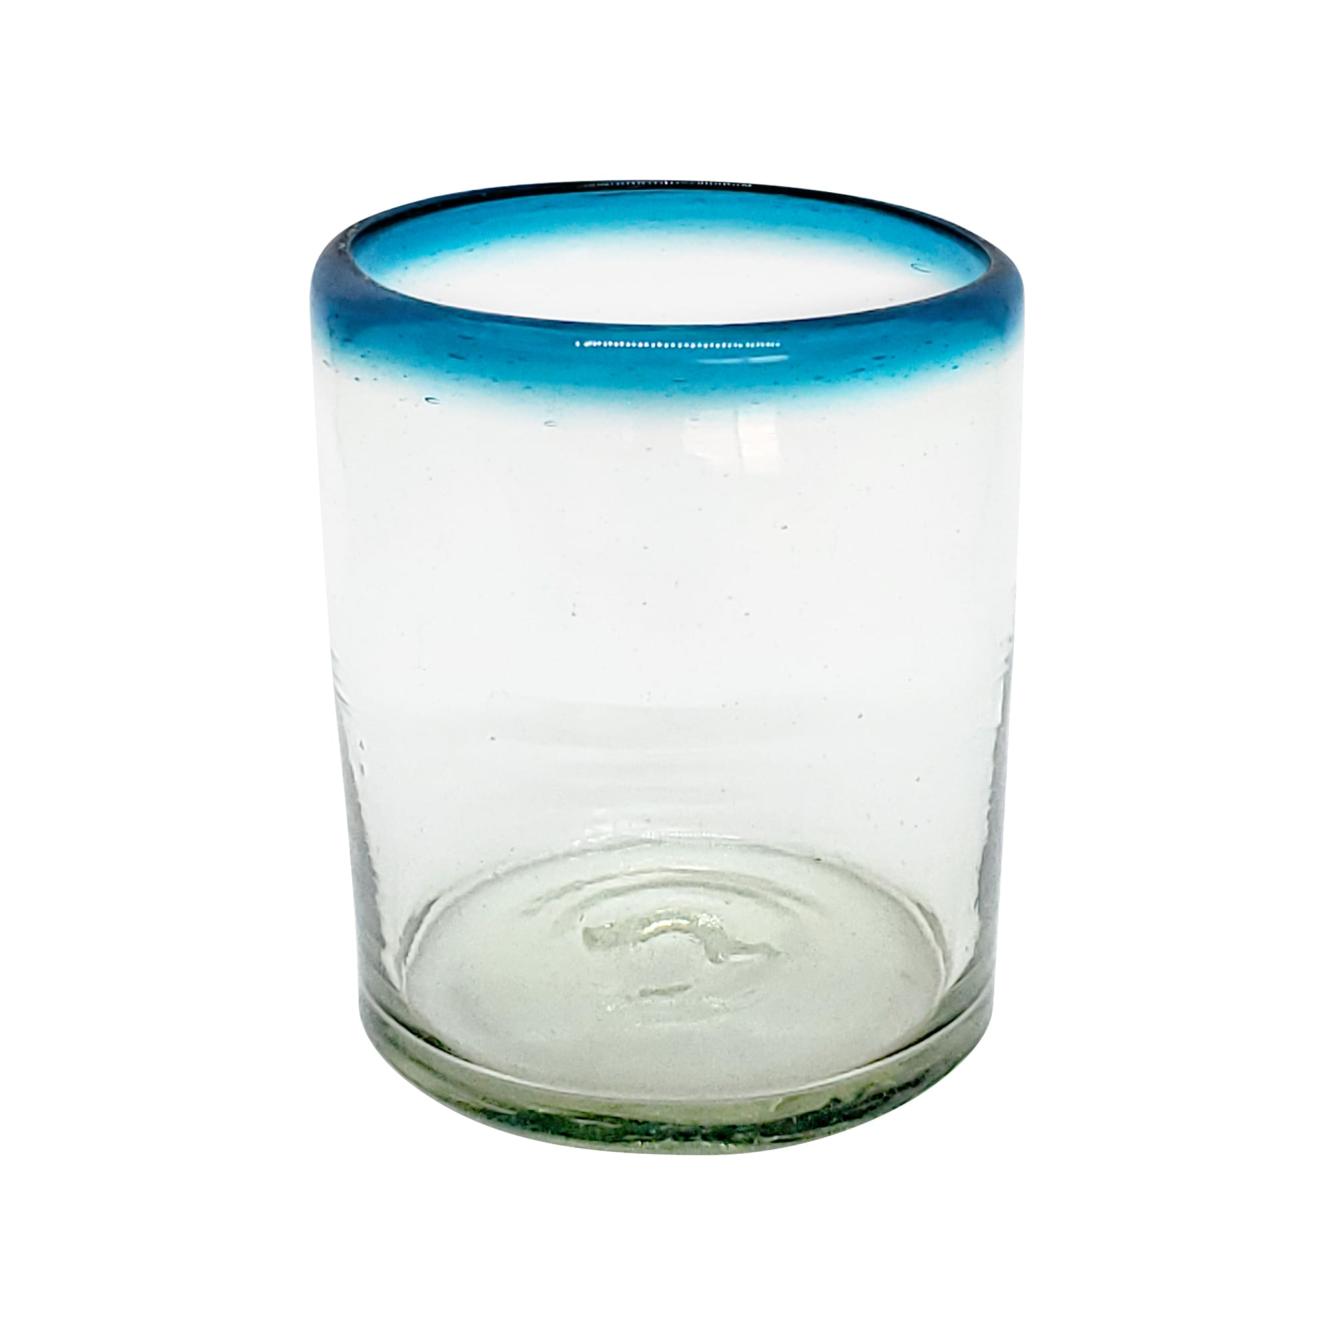 VIDRIO SOPLADO al Mayoreo / vasos chicos con borde azul aqua, 10 oz, Vidrio Reciclado, Libre de Plomo y Toxinas / stos vasos chicos son un gran complemento para su juego de jarra y vasos grandes.